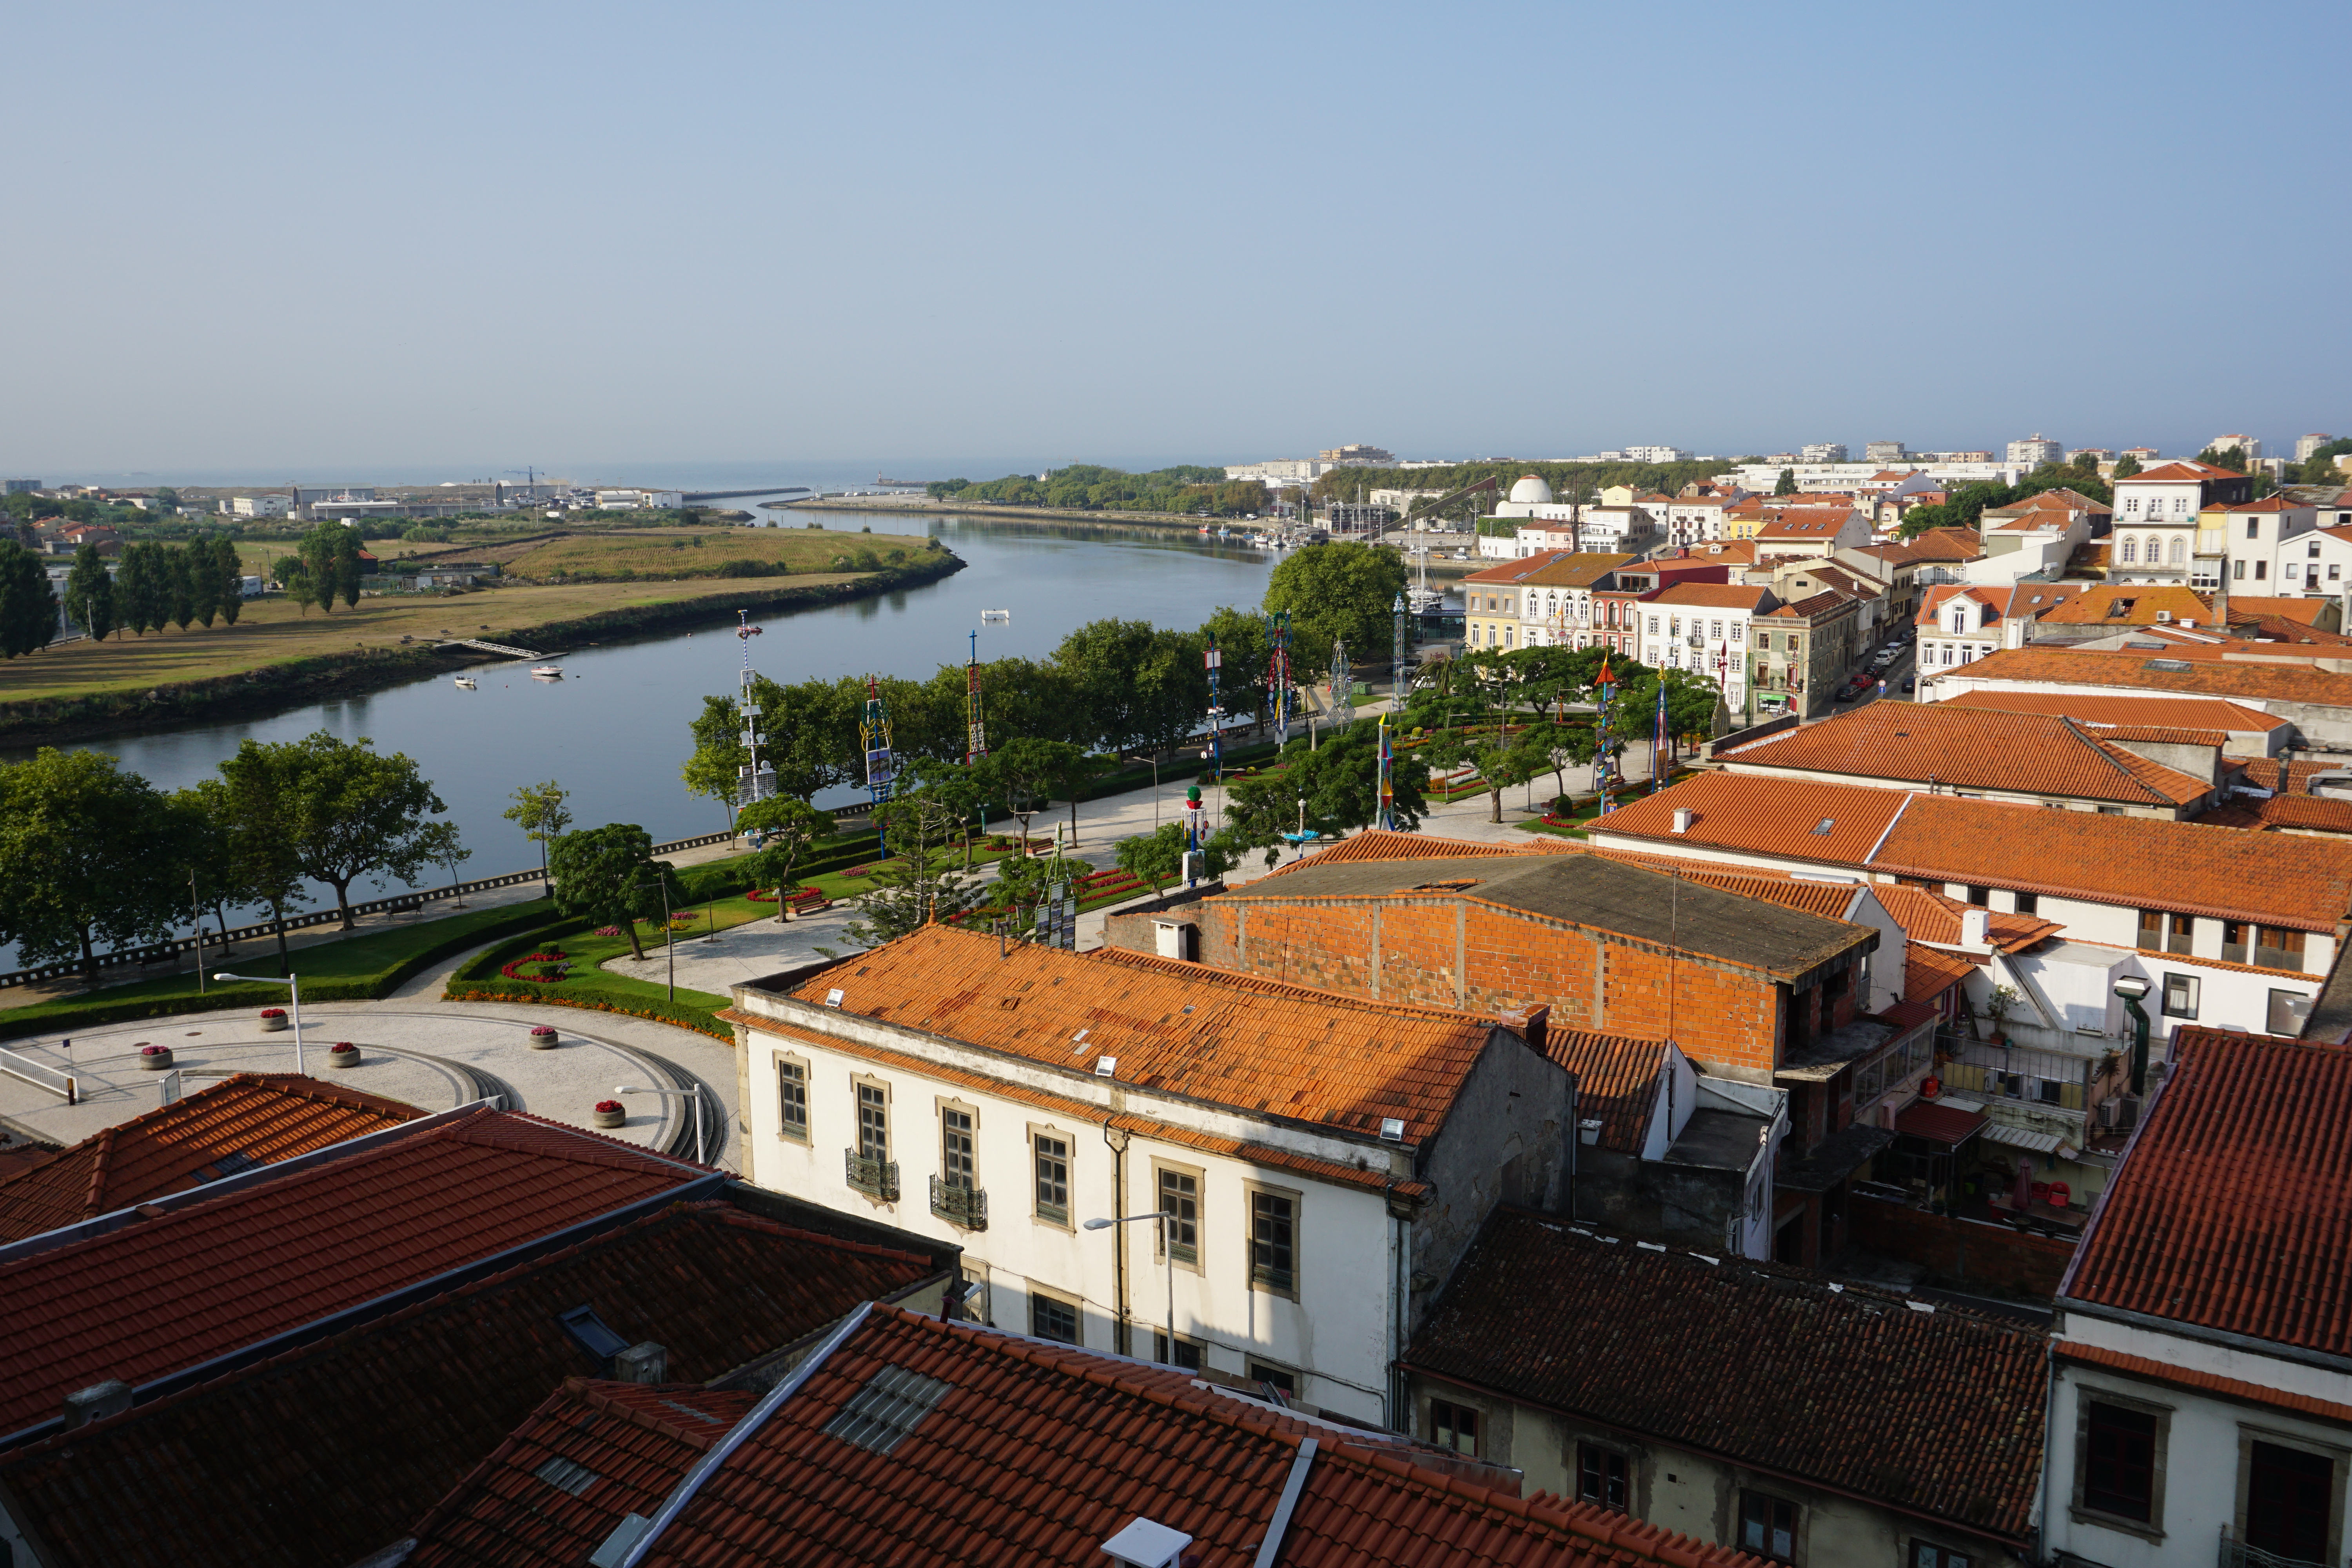 Португальский Путь Сантьяго: Вила ду Конде